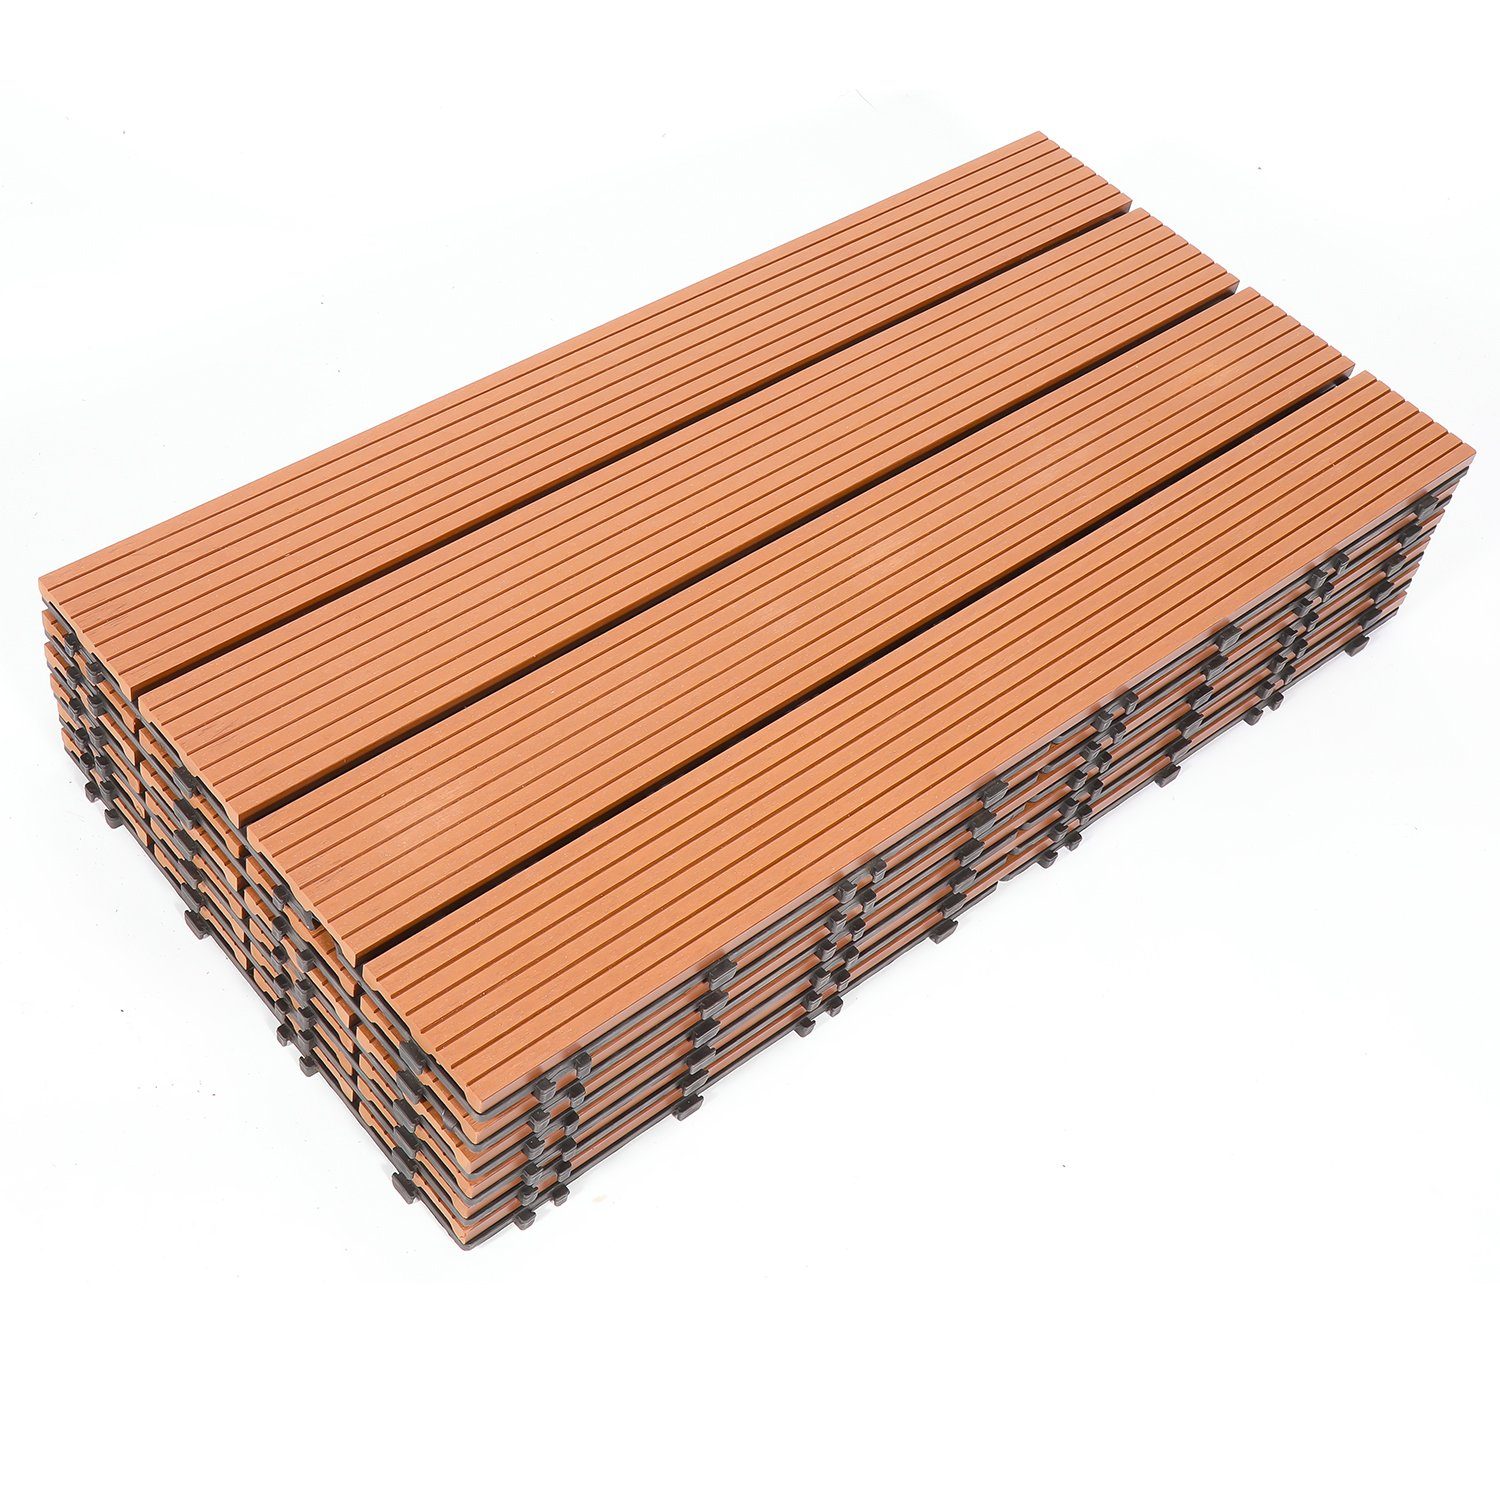 Randaco Holzfliesen WPC Fliesen 6 Stück 1m² 60x30 cm Terrassendielen Holzfliesen, mit klicksystem für Terrassen und Balkon